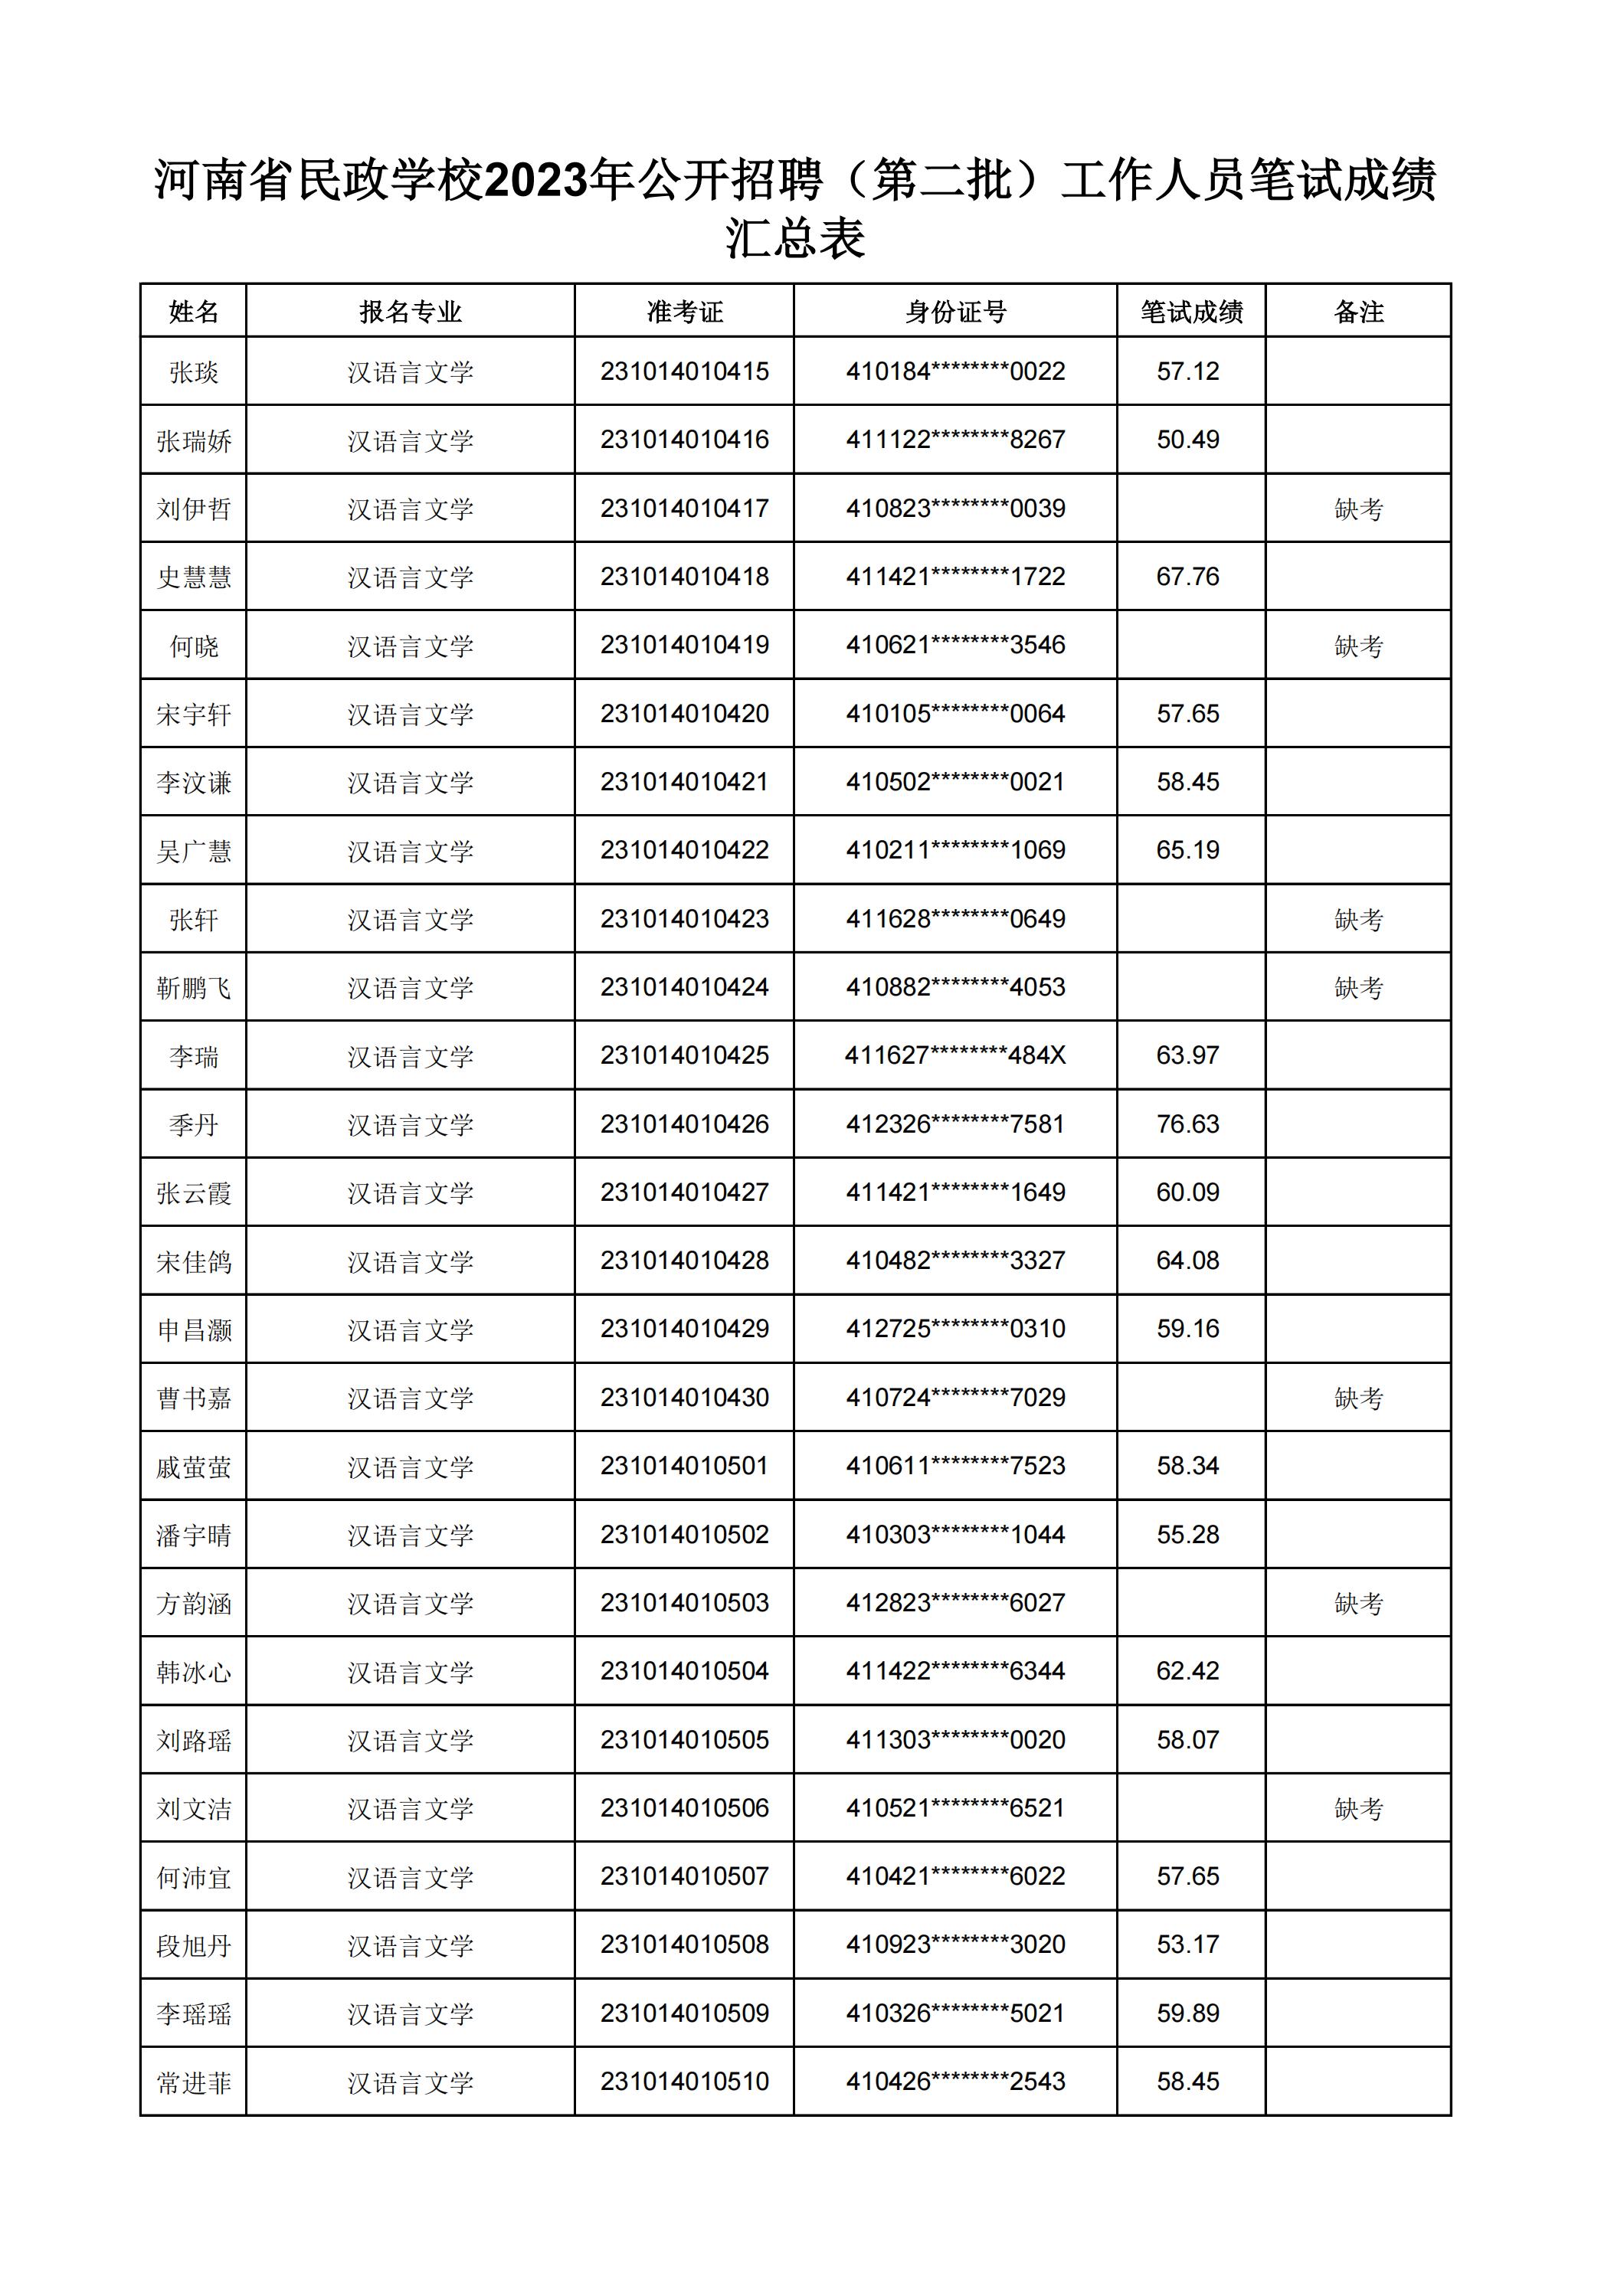 河南省民政学校2023年公开招聘（第二批）工作人员笔试成绩汇总表(2)_04.jpg